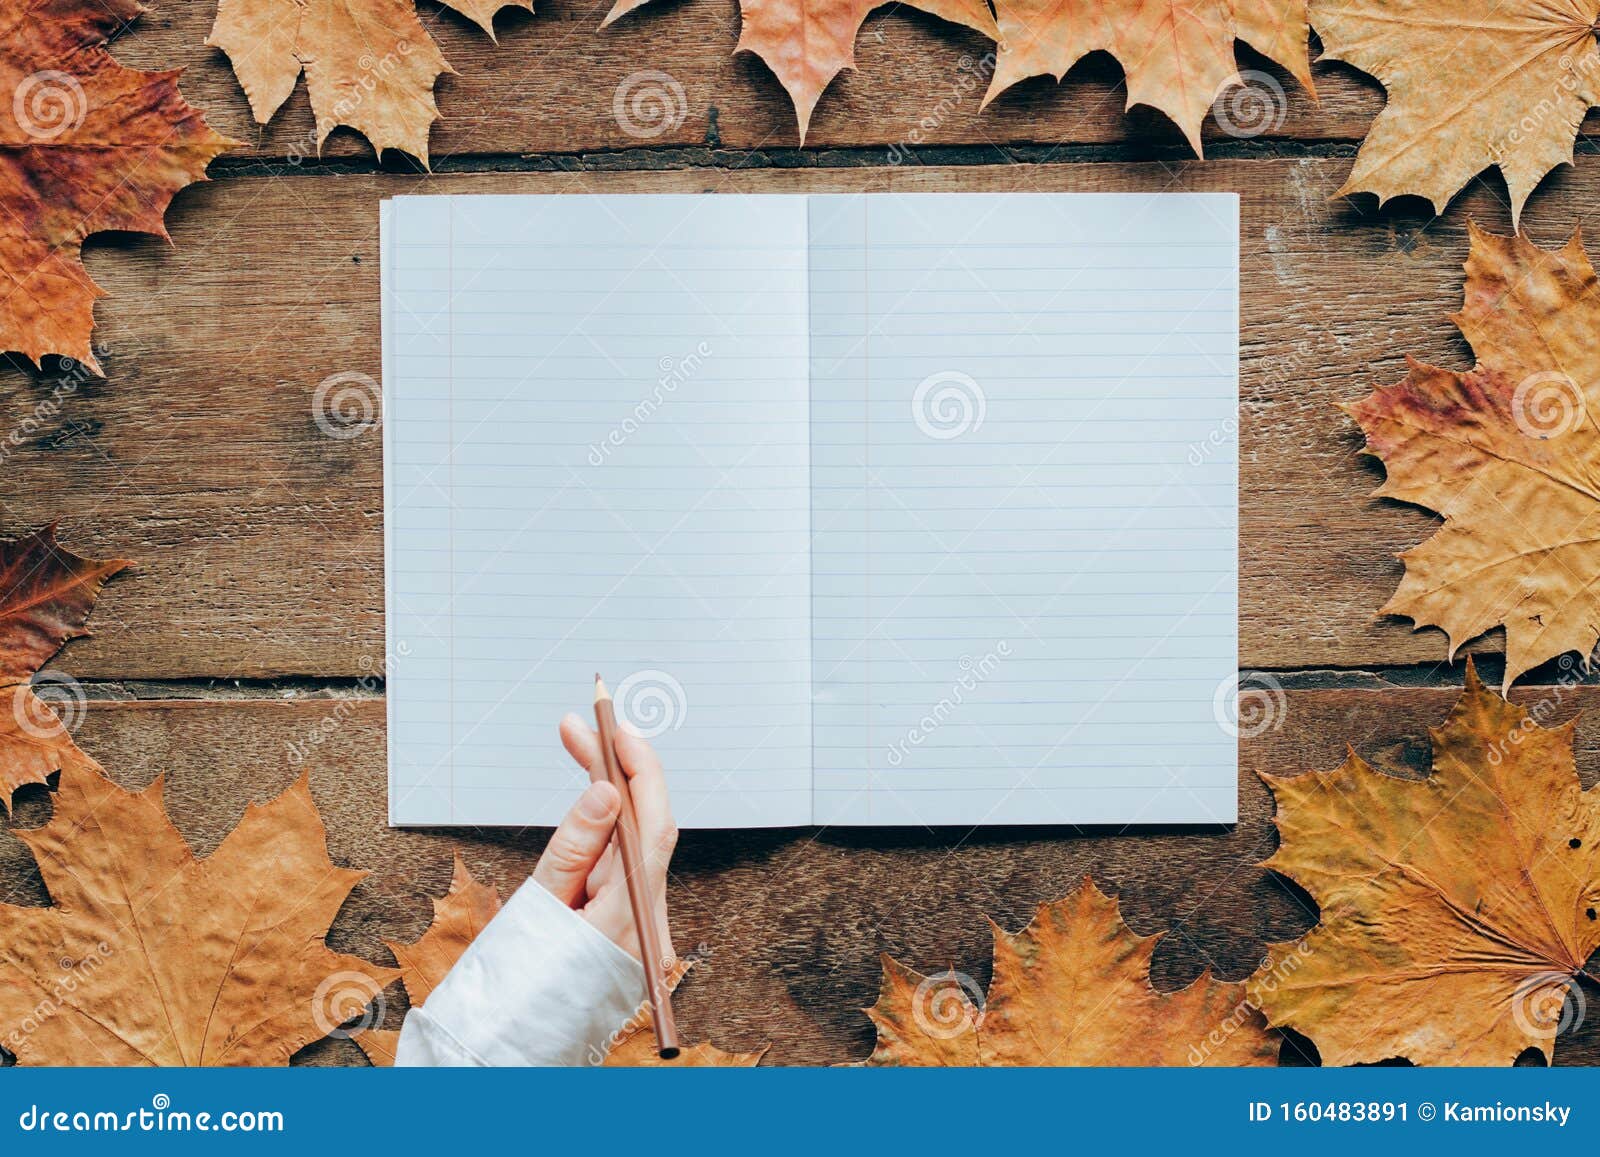 秋叶木背景 有女人的手和复印空间9月1日的壁纸库存图片 图片包括有9月1日的壁纸 秋叶木背景 有女人的手和复印空间